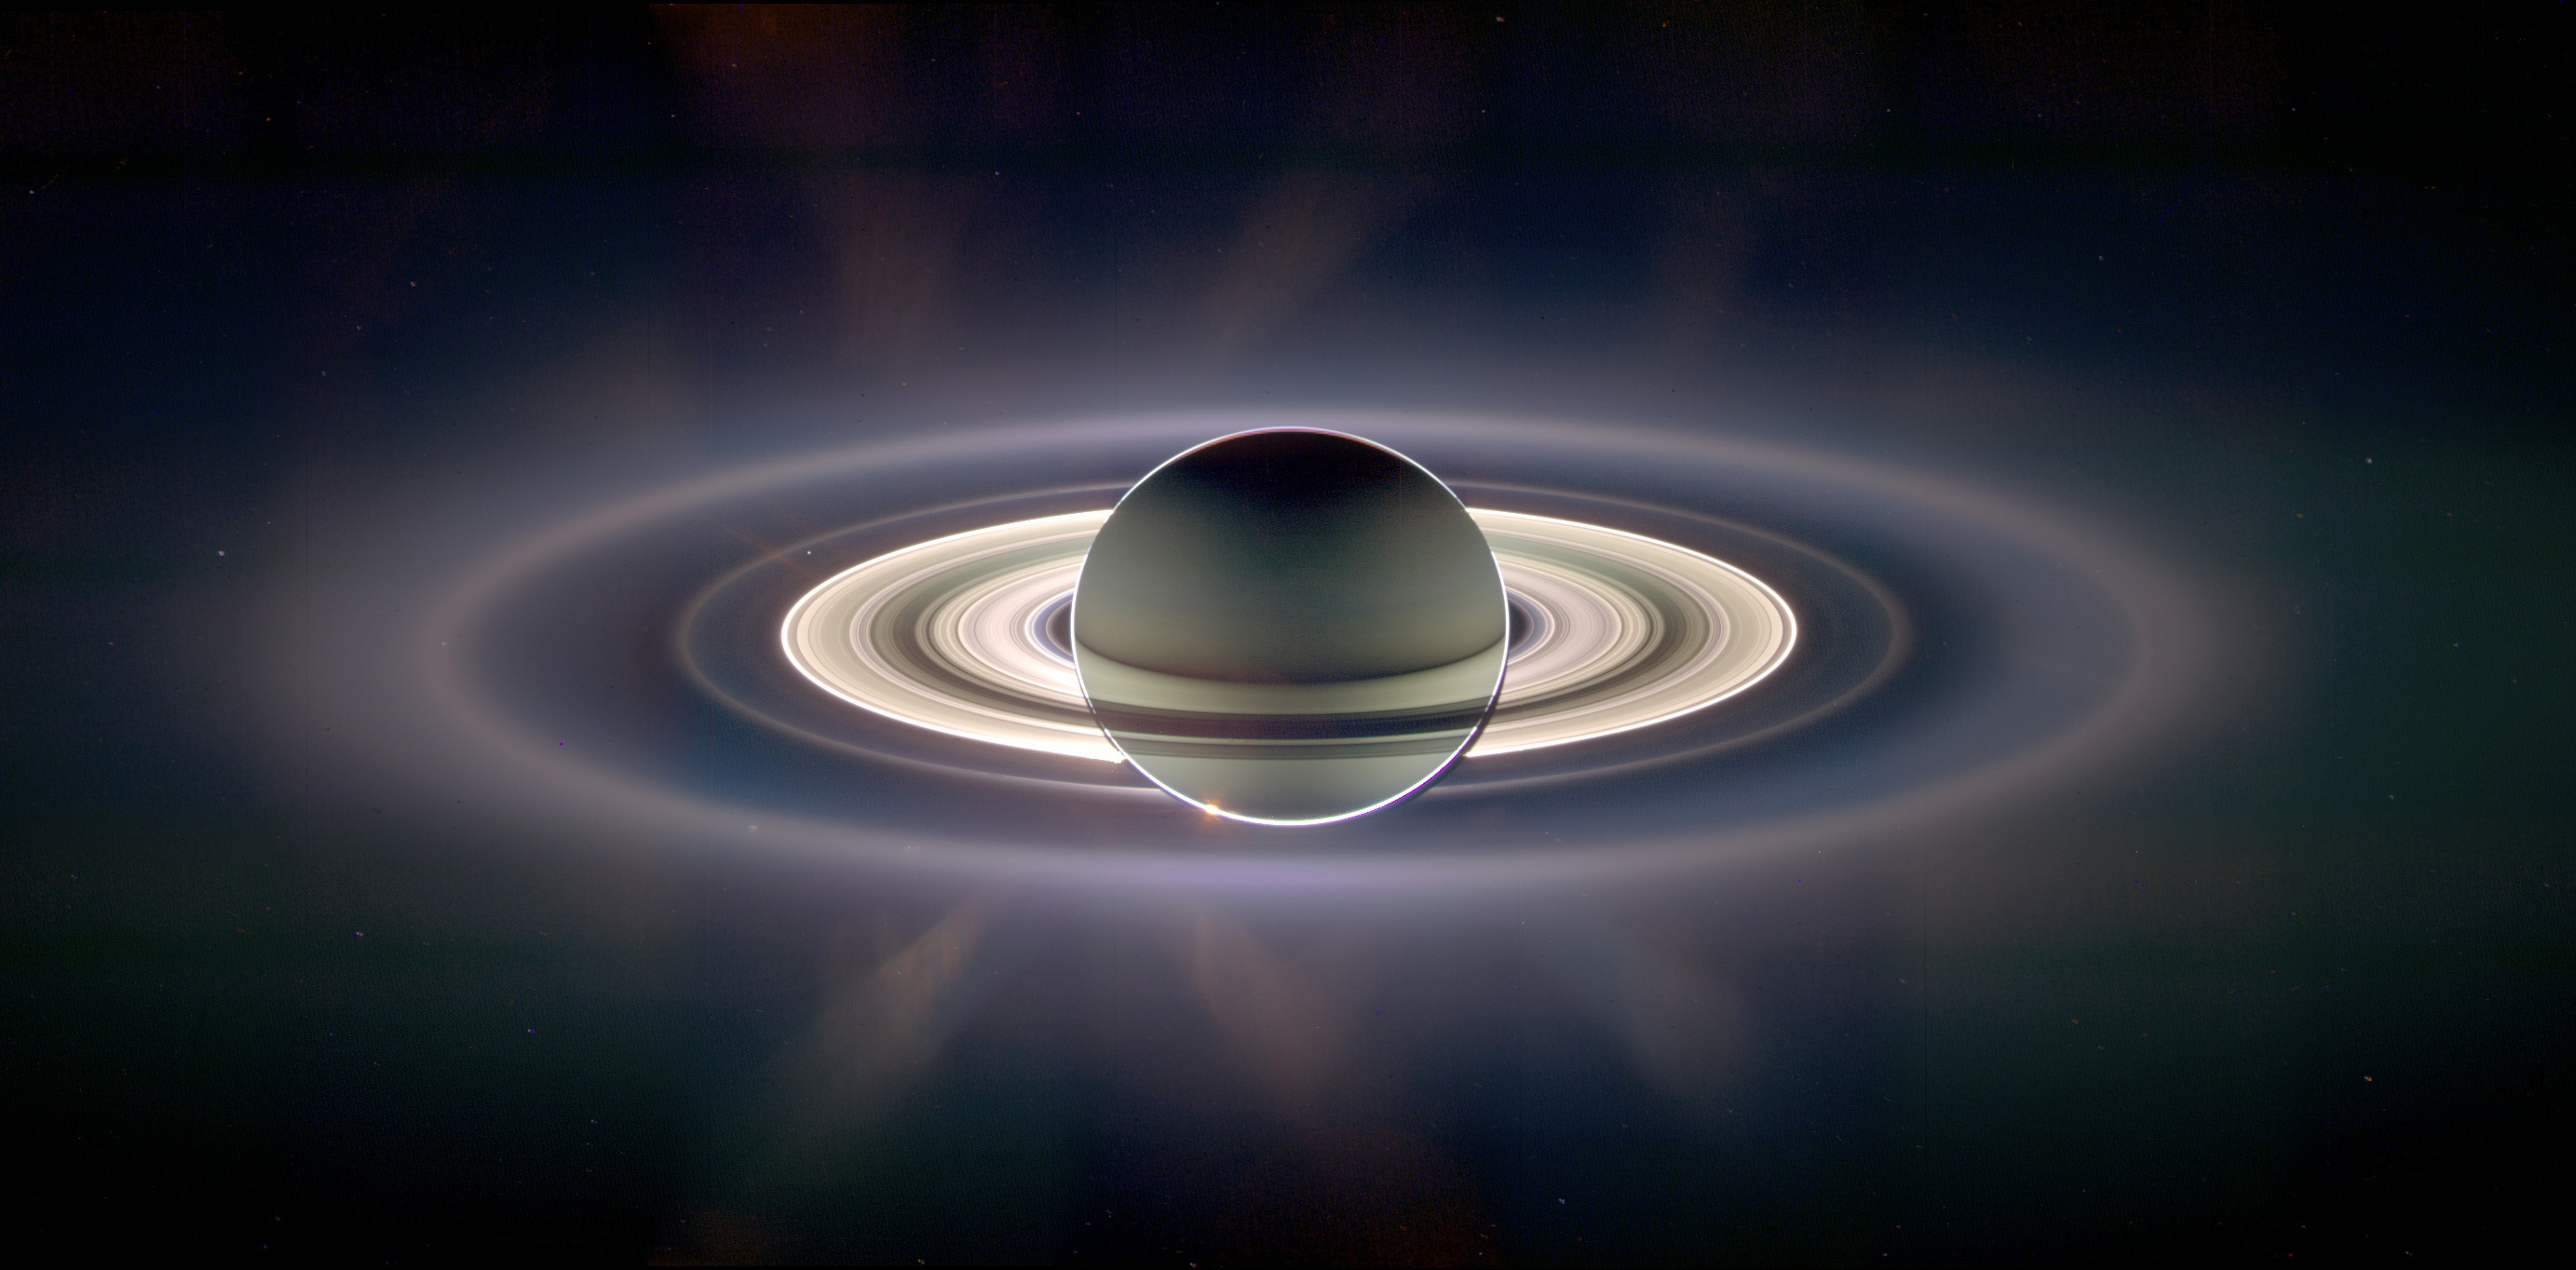 Sonda Cassini as melhores fotos de Saturno e suas luas